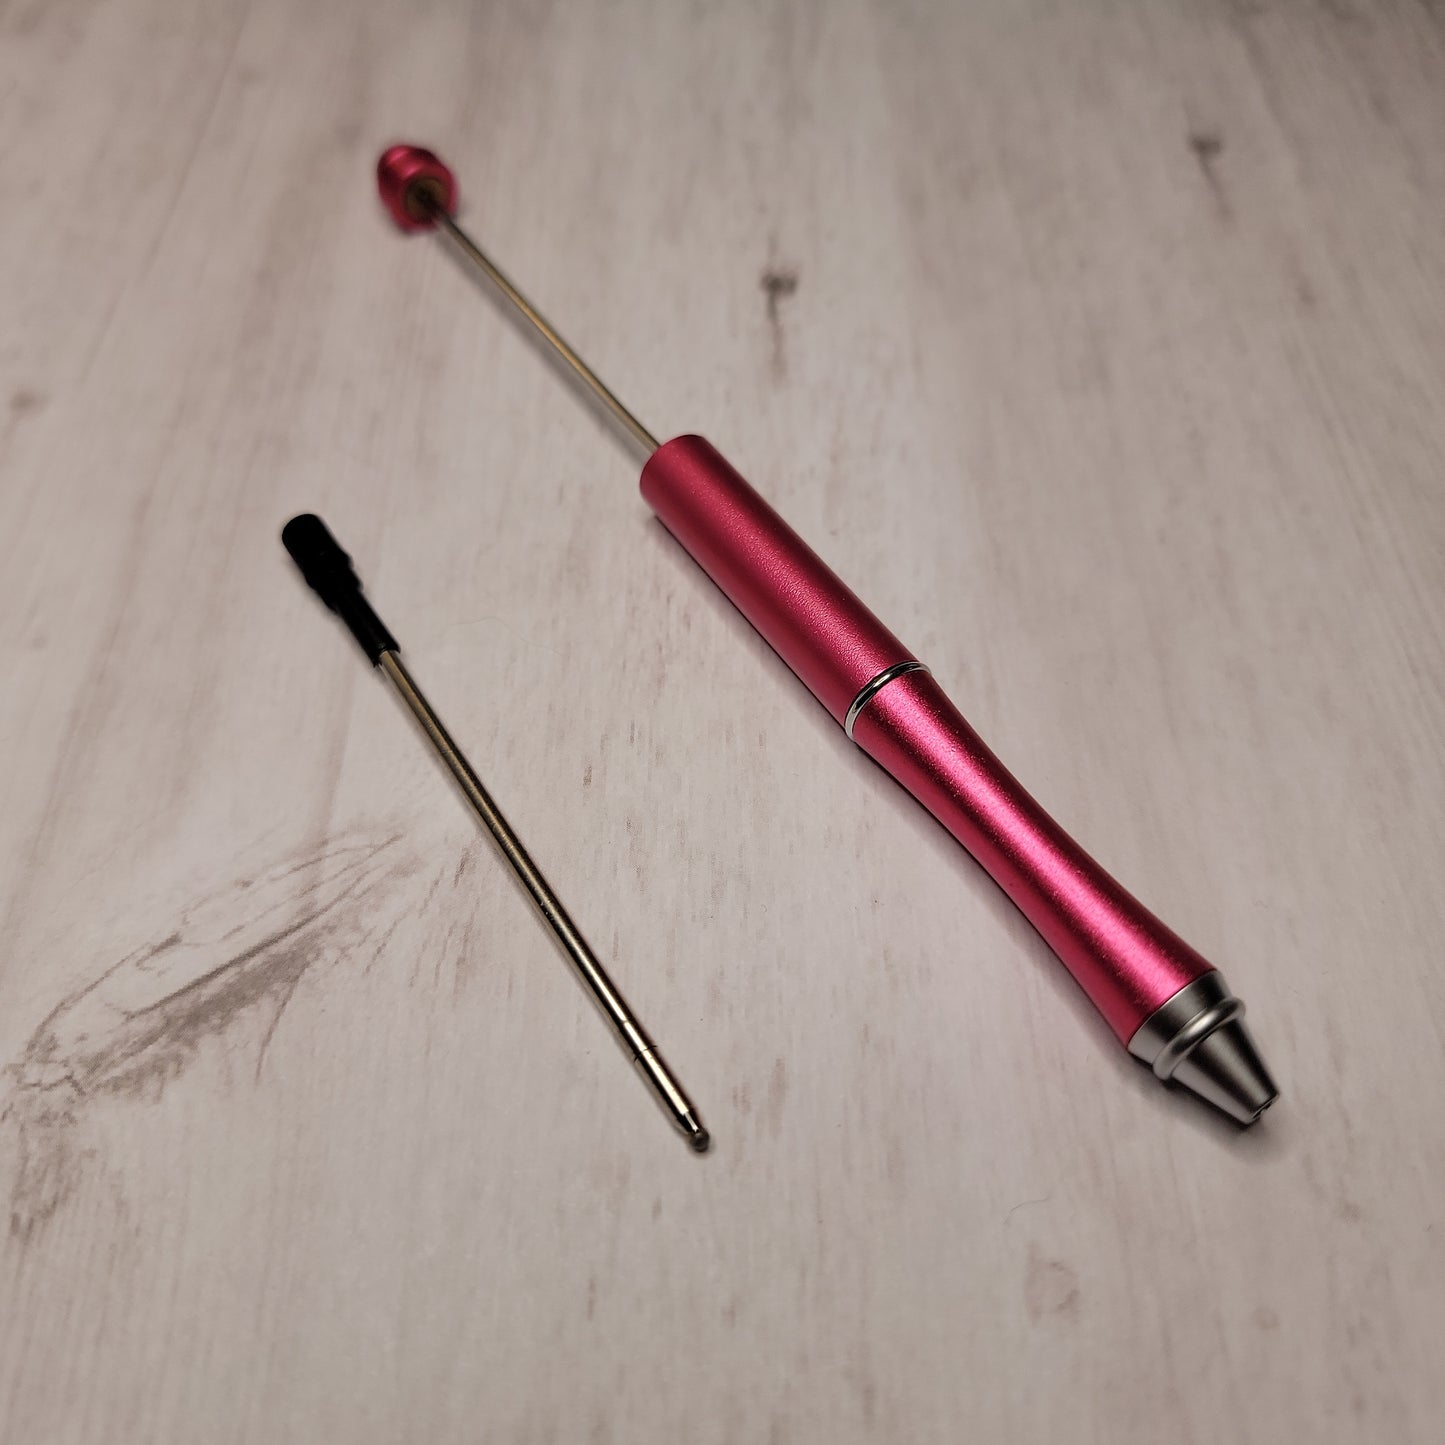 Beadable Pens (metal) plus ink refill